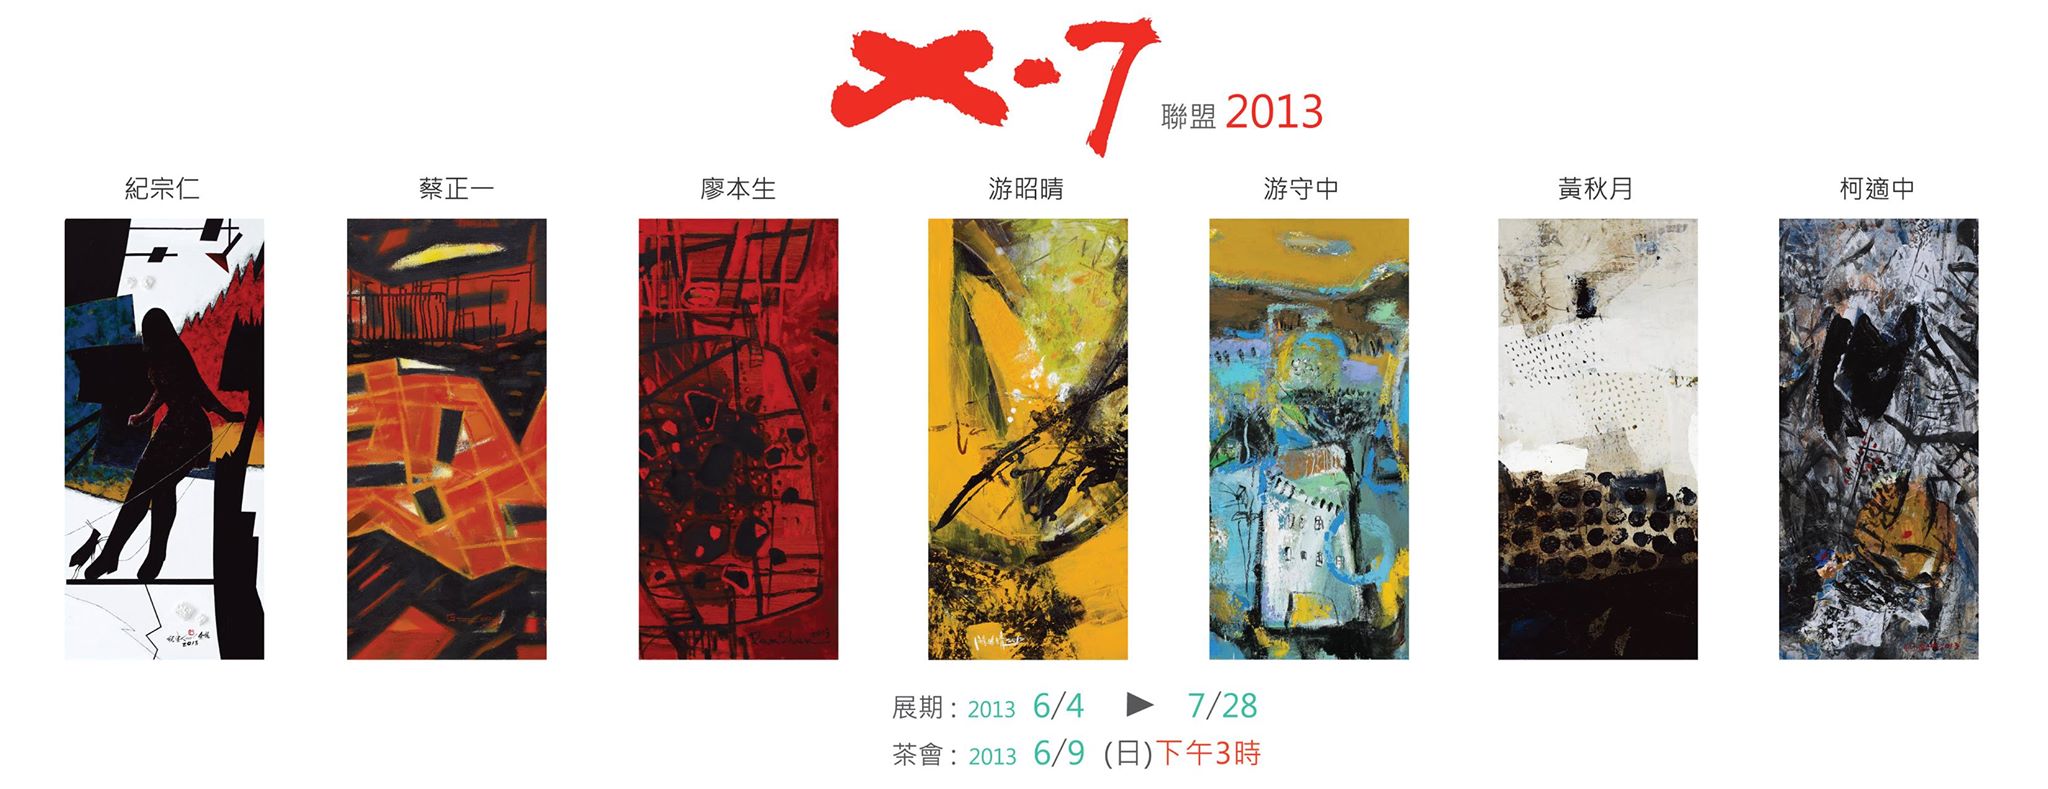 X-7聯盟2013   2013/6/4~7/28